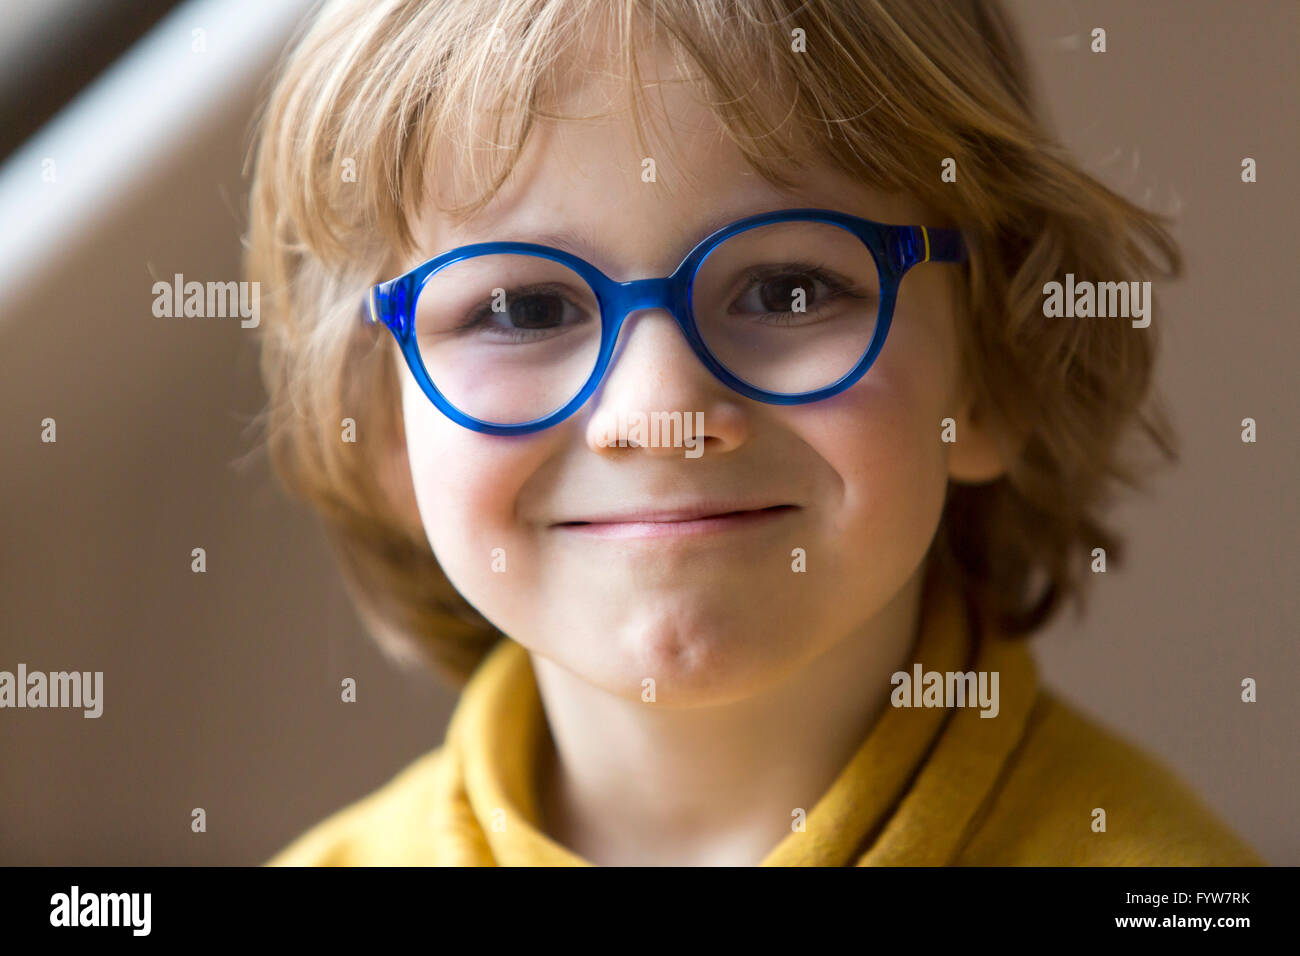 Ragazzo di 6 anni, sembra cordiale, sorrisi, con occhiali, con una cornice blu, Foto Stock